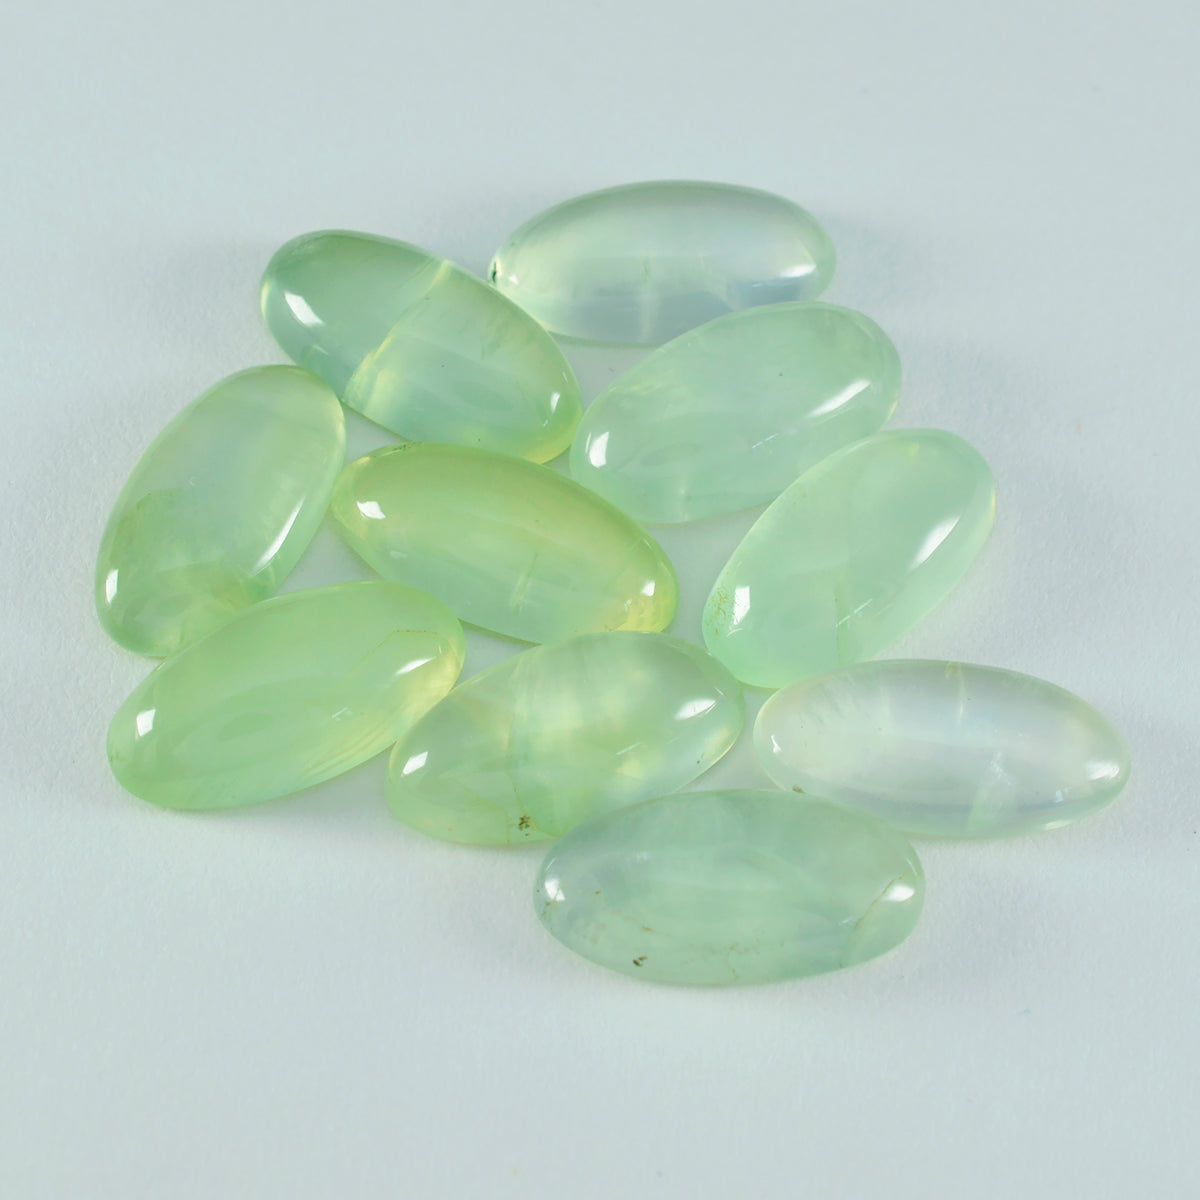 riyogems 1шт зеленый пренит кабошон 10x20 мм форма маркиза драгоценные камни удивительного качества